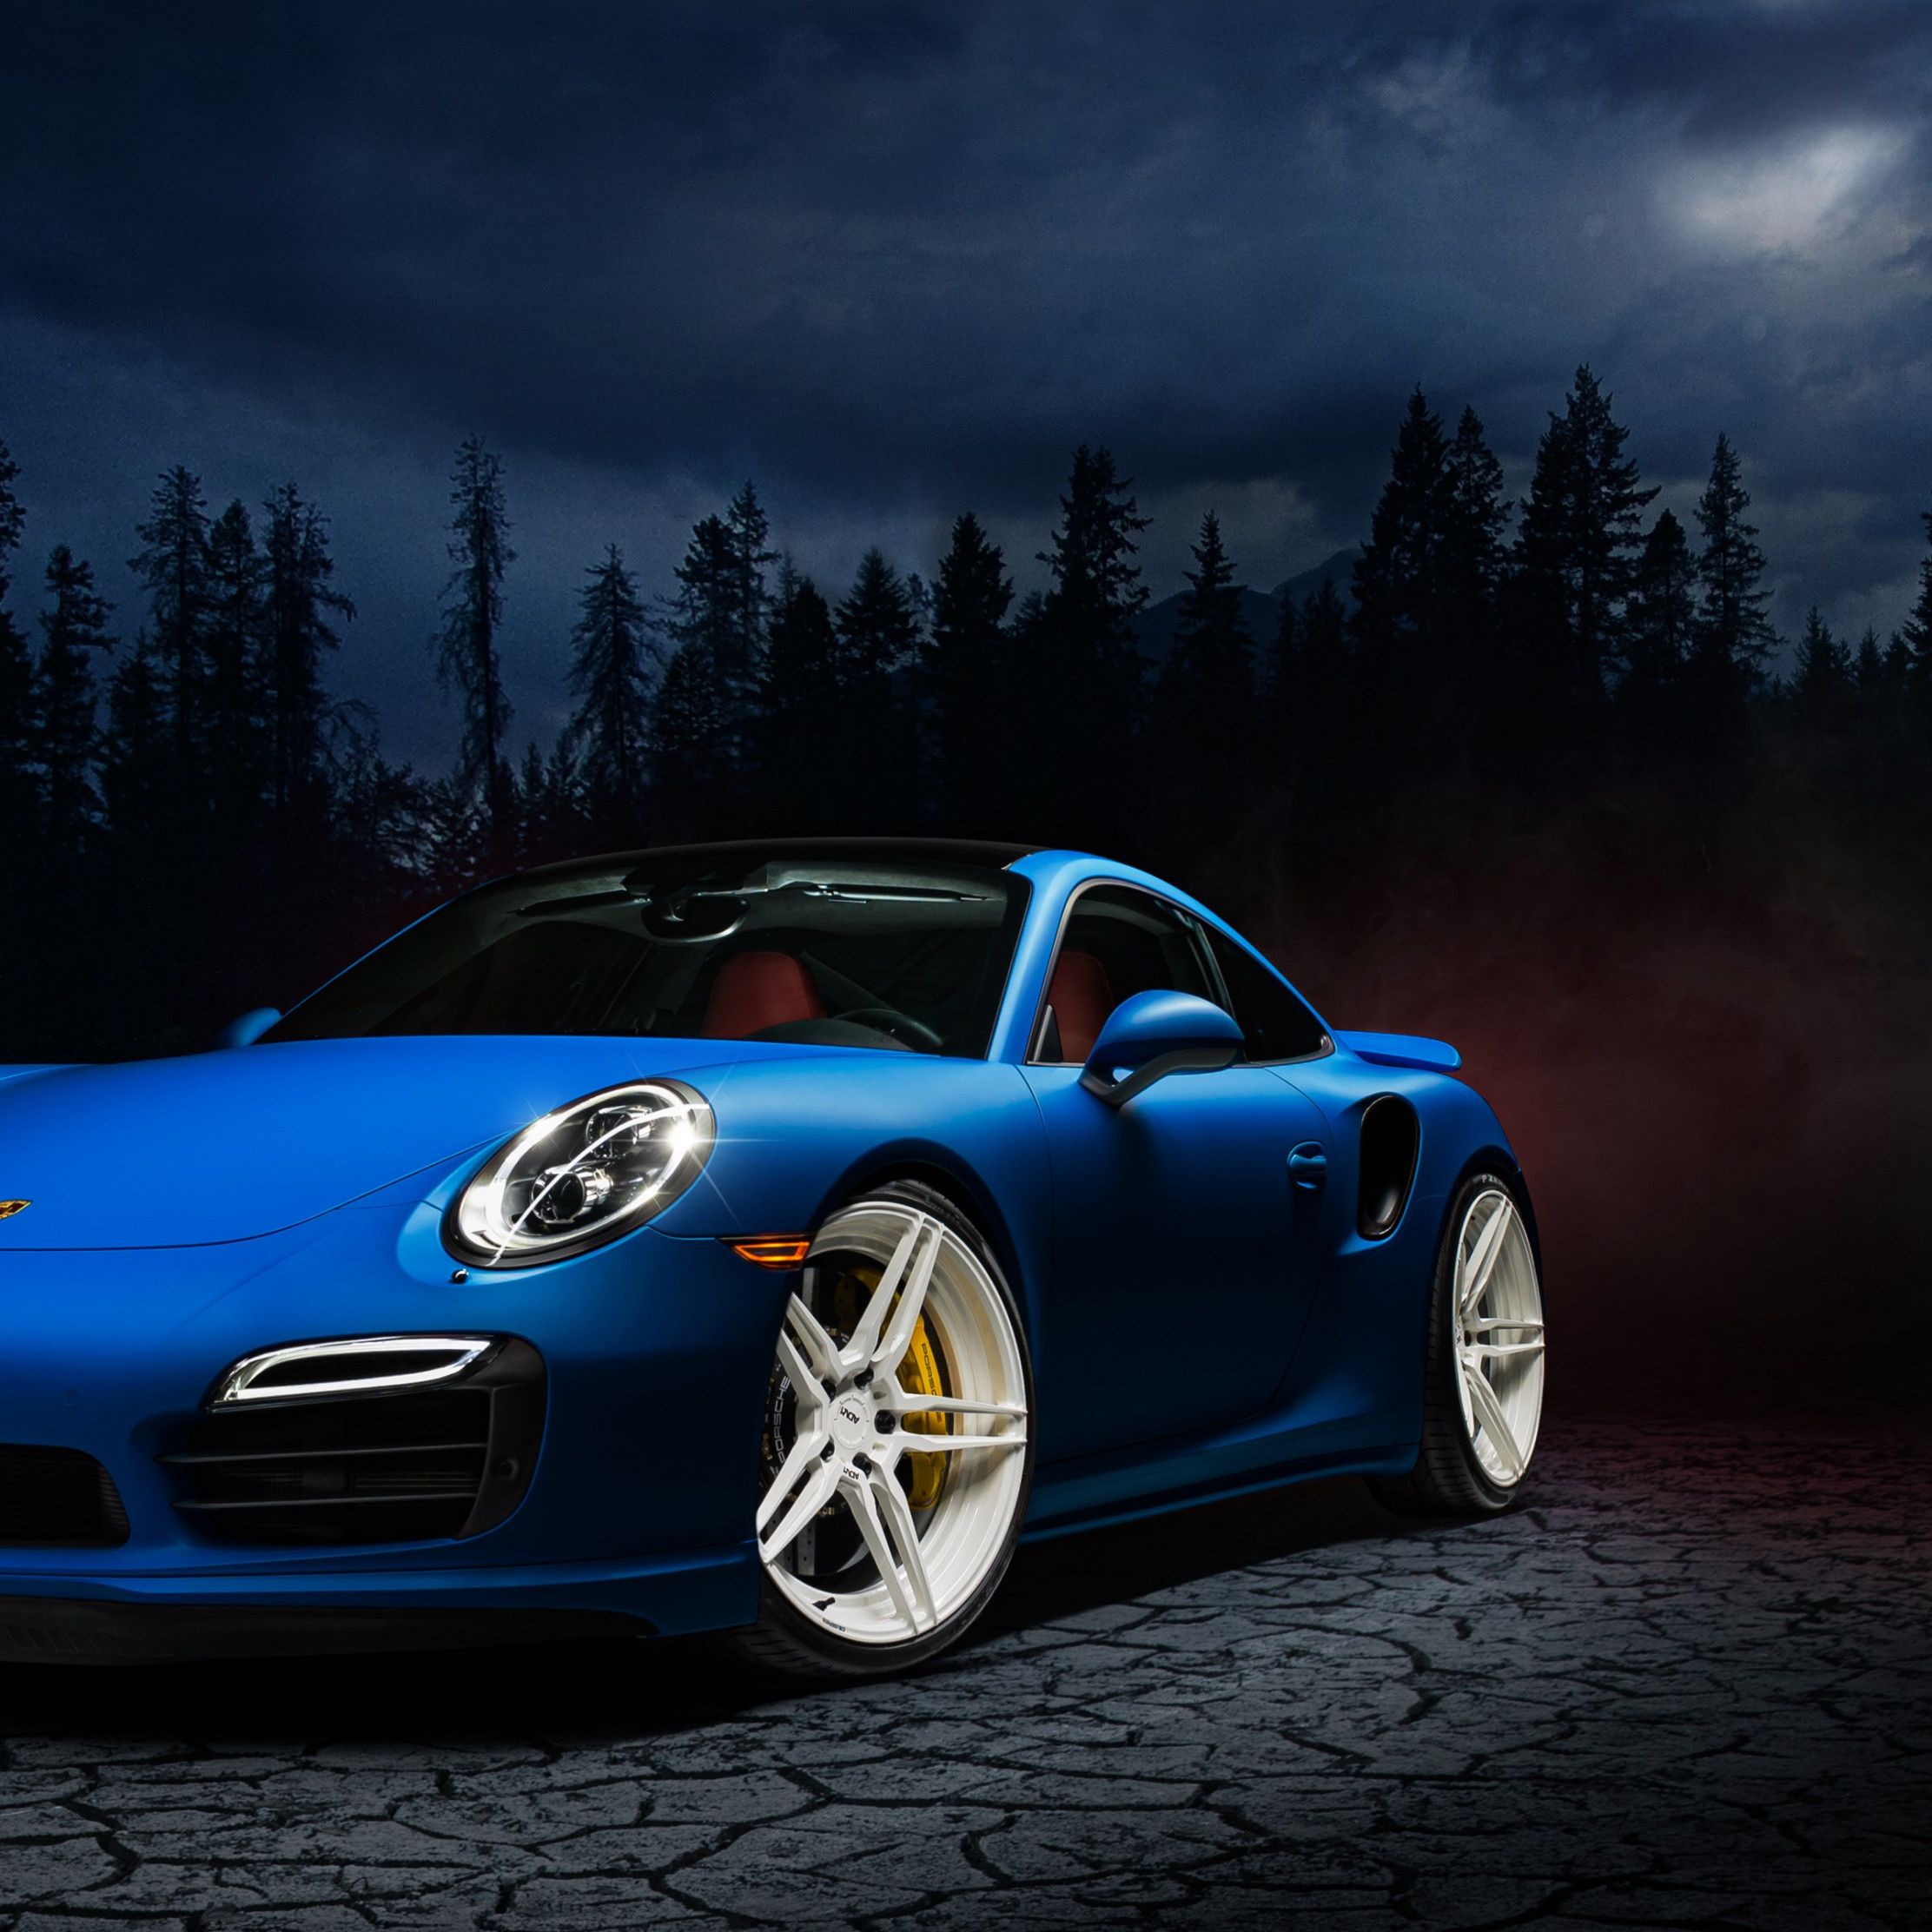 Download wallpaper: Porsche 911 blue 2224x2224